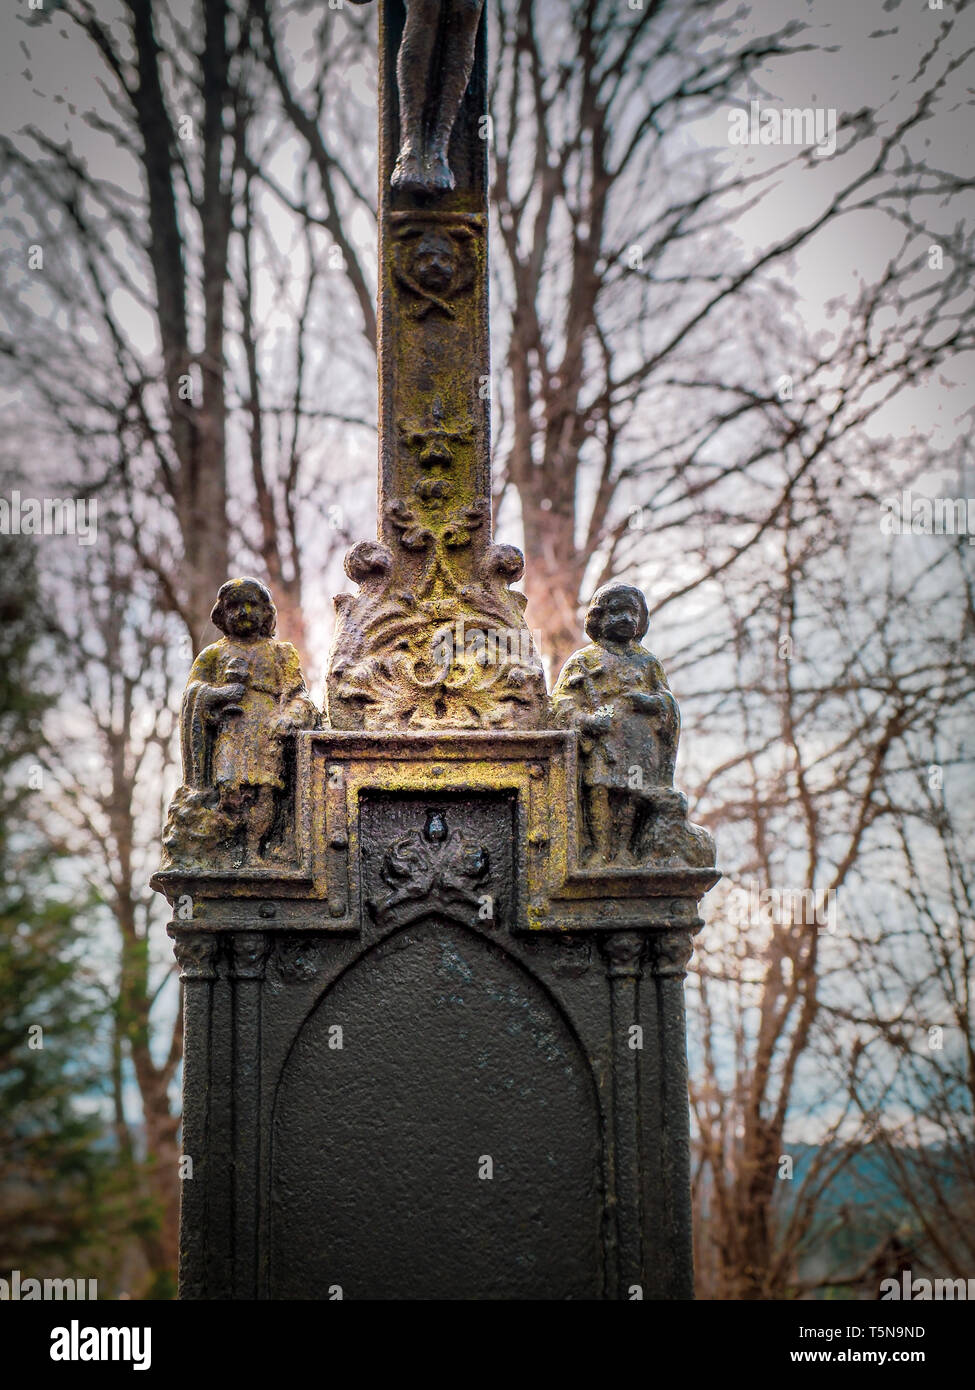 Details von Messing kreuz Kreuze in alten vergessenen Friedhof von beniowa Dorf in Bieszczady, Polen, in der Nähe der Grenze mit der Ukraine. Stockfoto